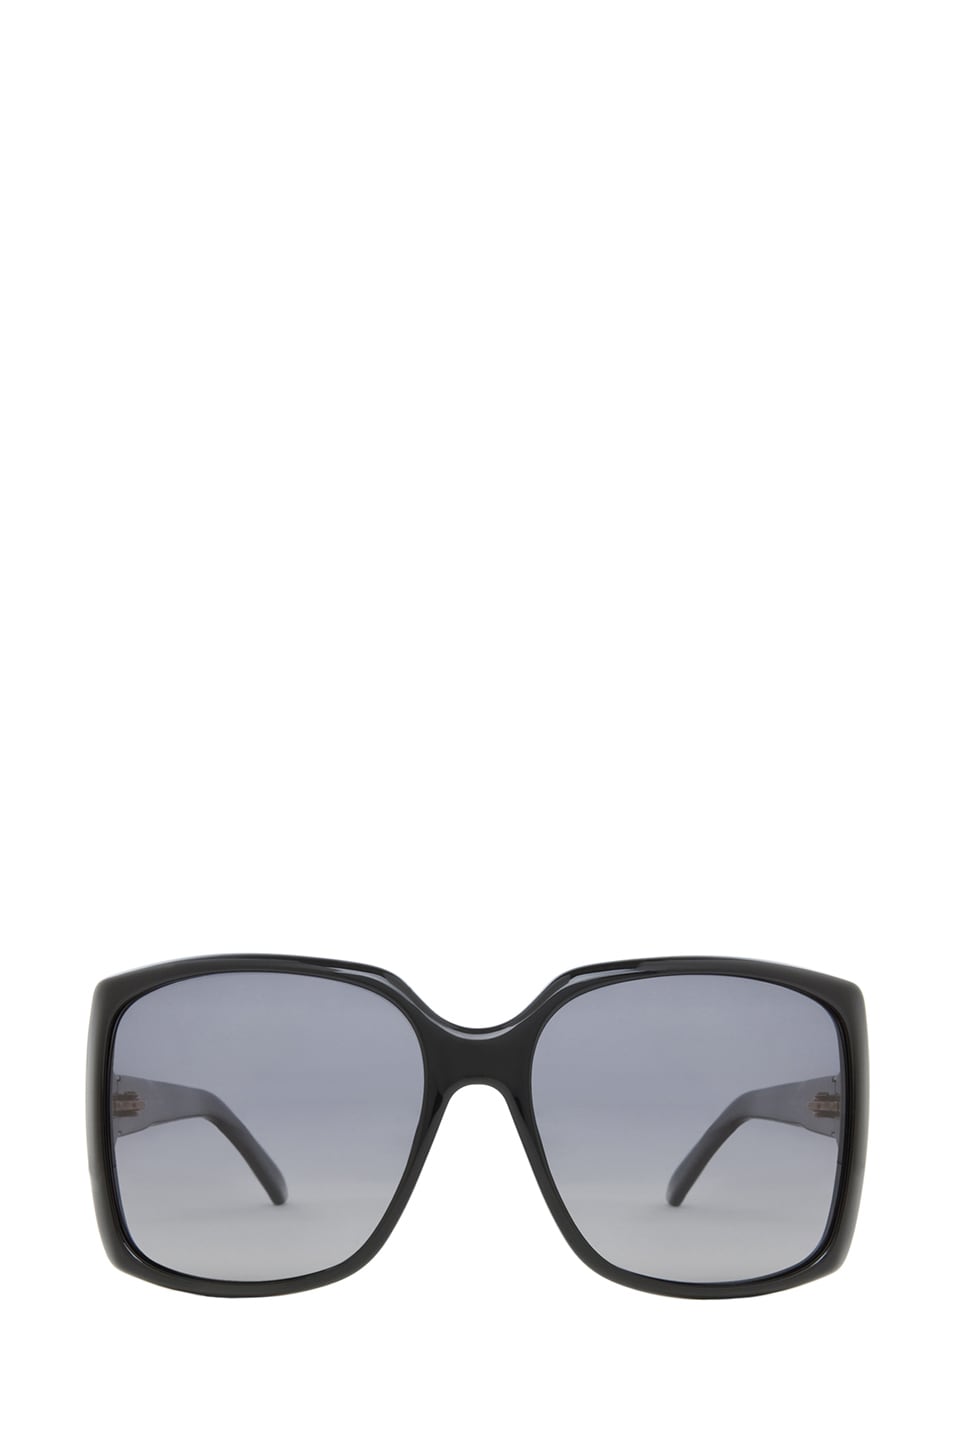 Image 1 of Gucci 3589 Sunglasses in Black & Gray Polarized